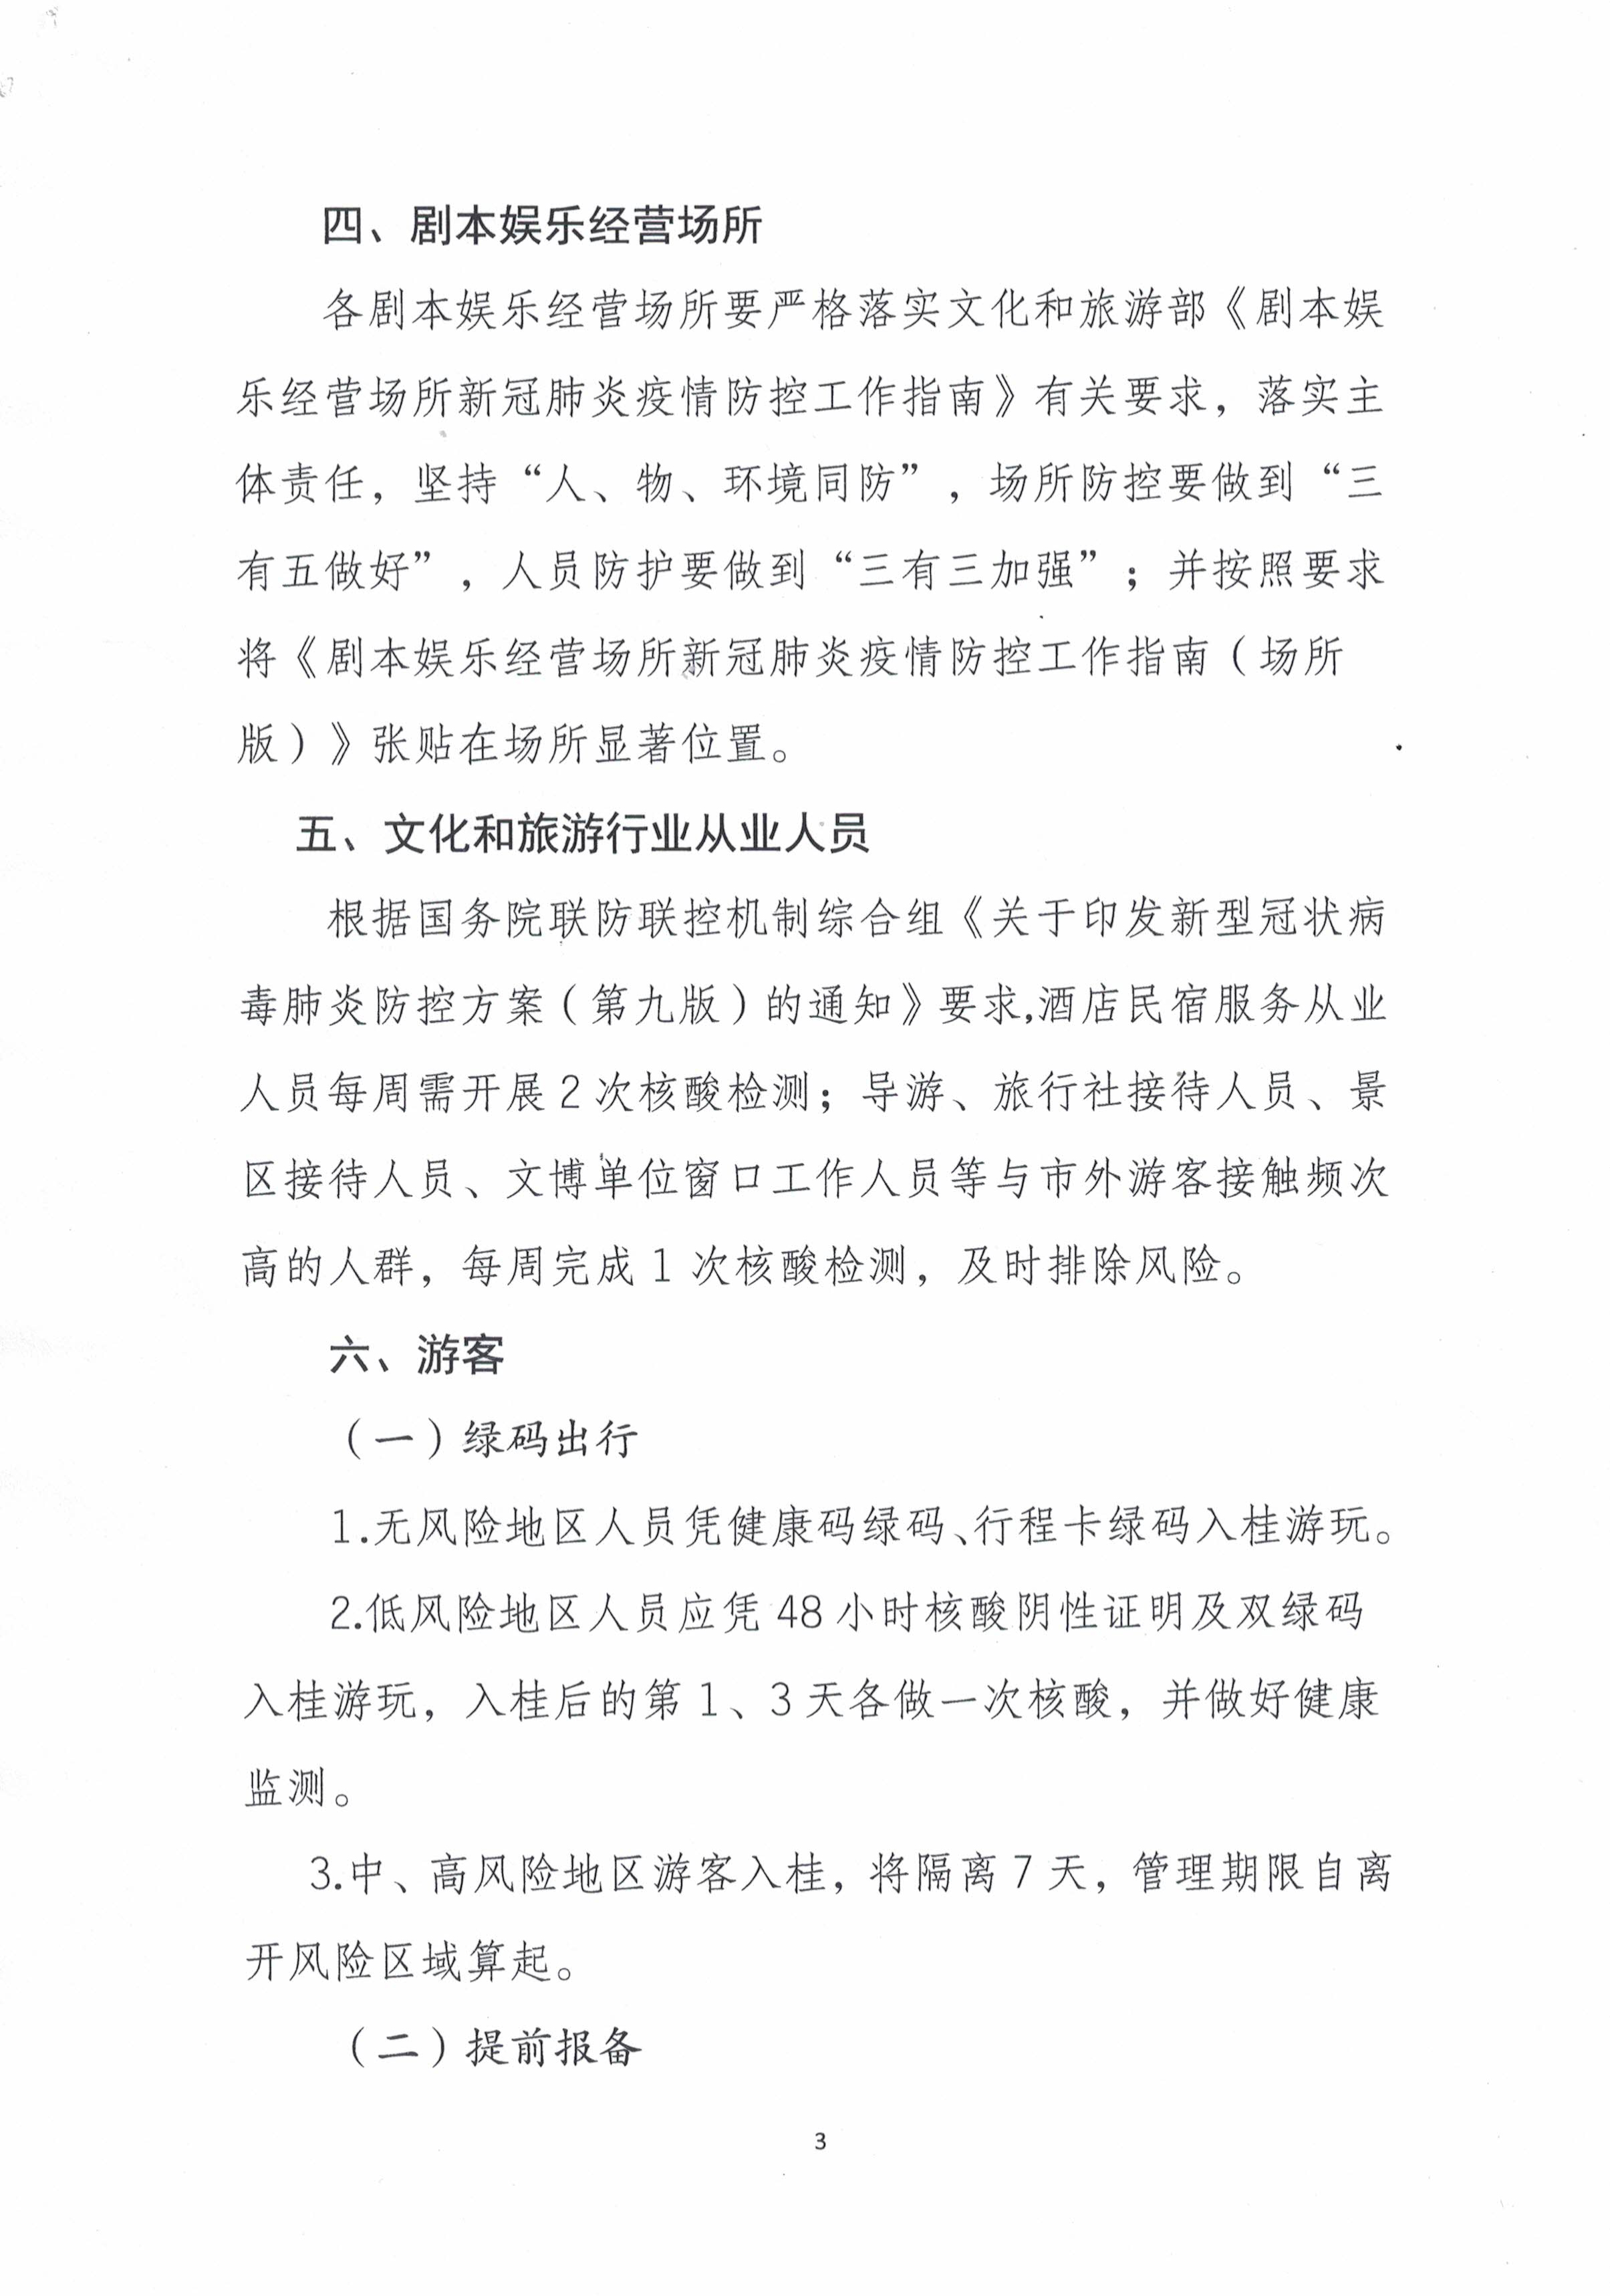 桂林市文化广电和旅游局关于做好文化和旅游行业疫情防控的工作提示-3.jpg